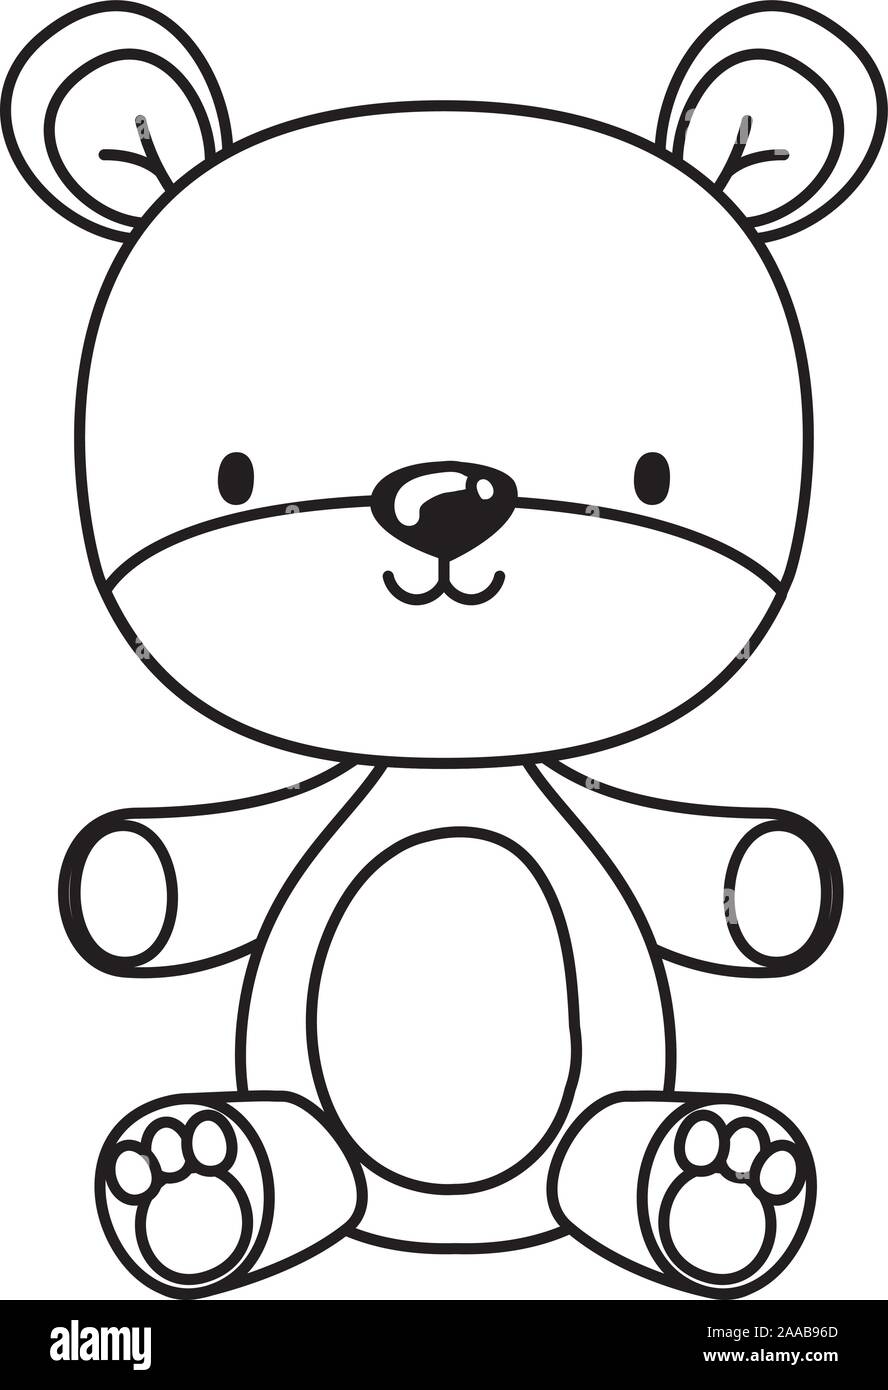 Isolated teddy bear toy vector design Stock Vector